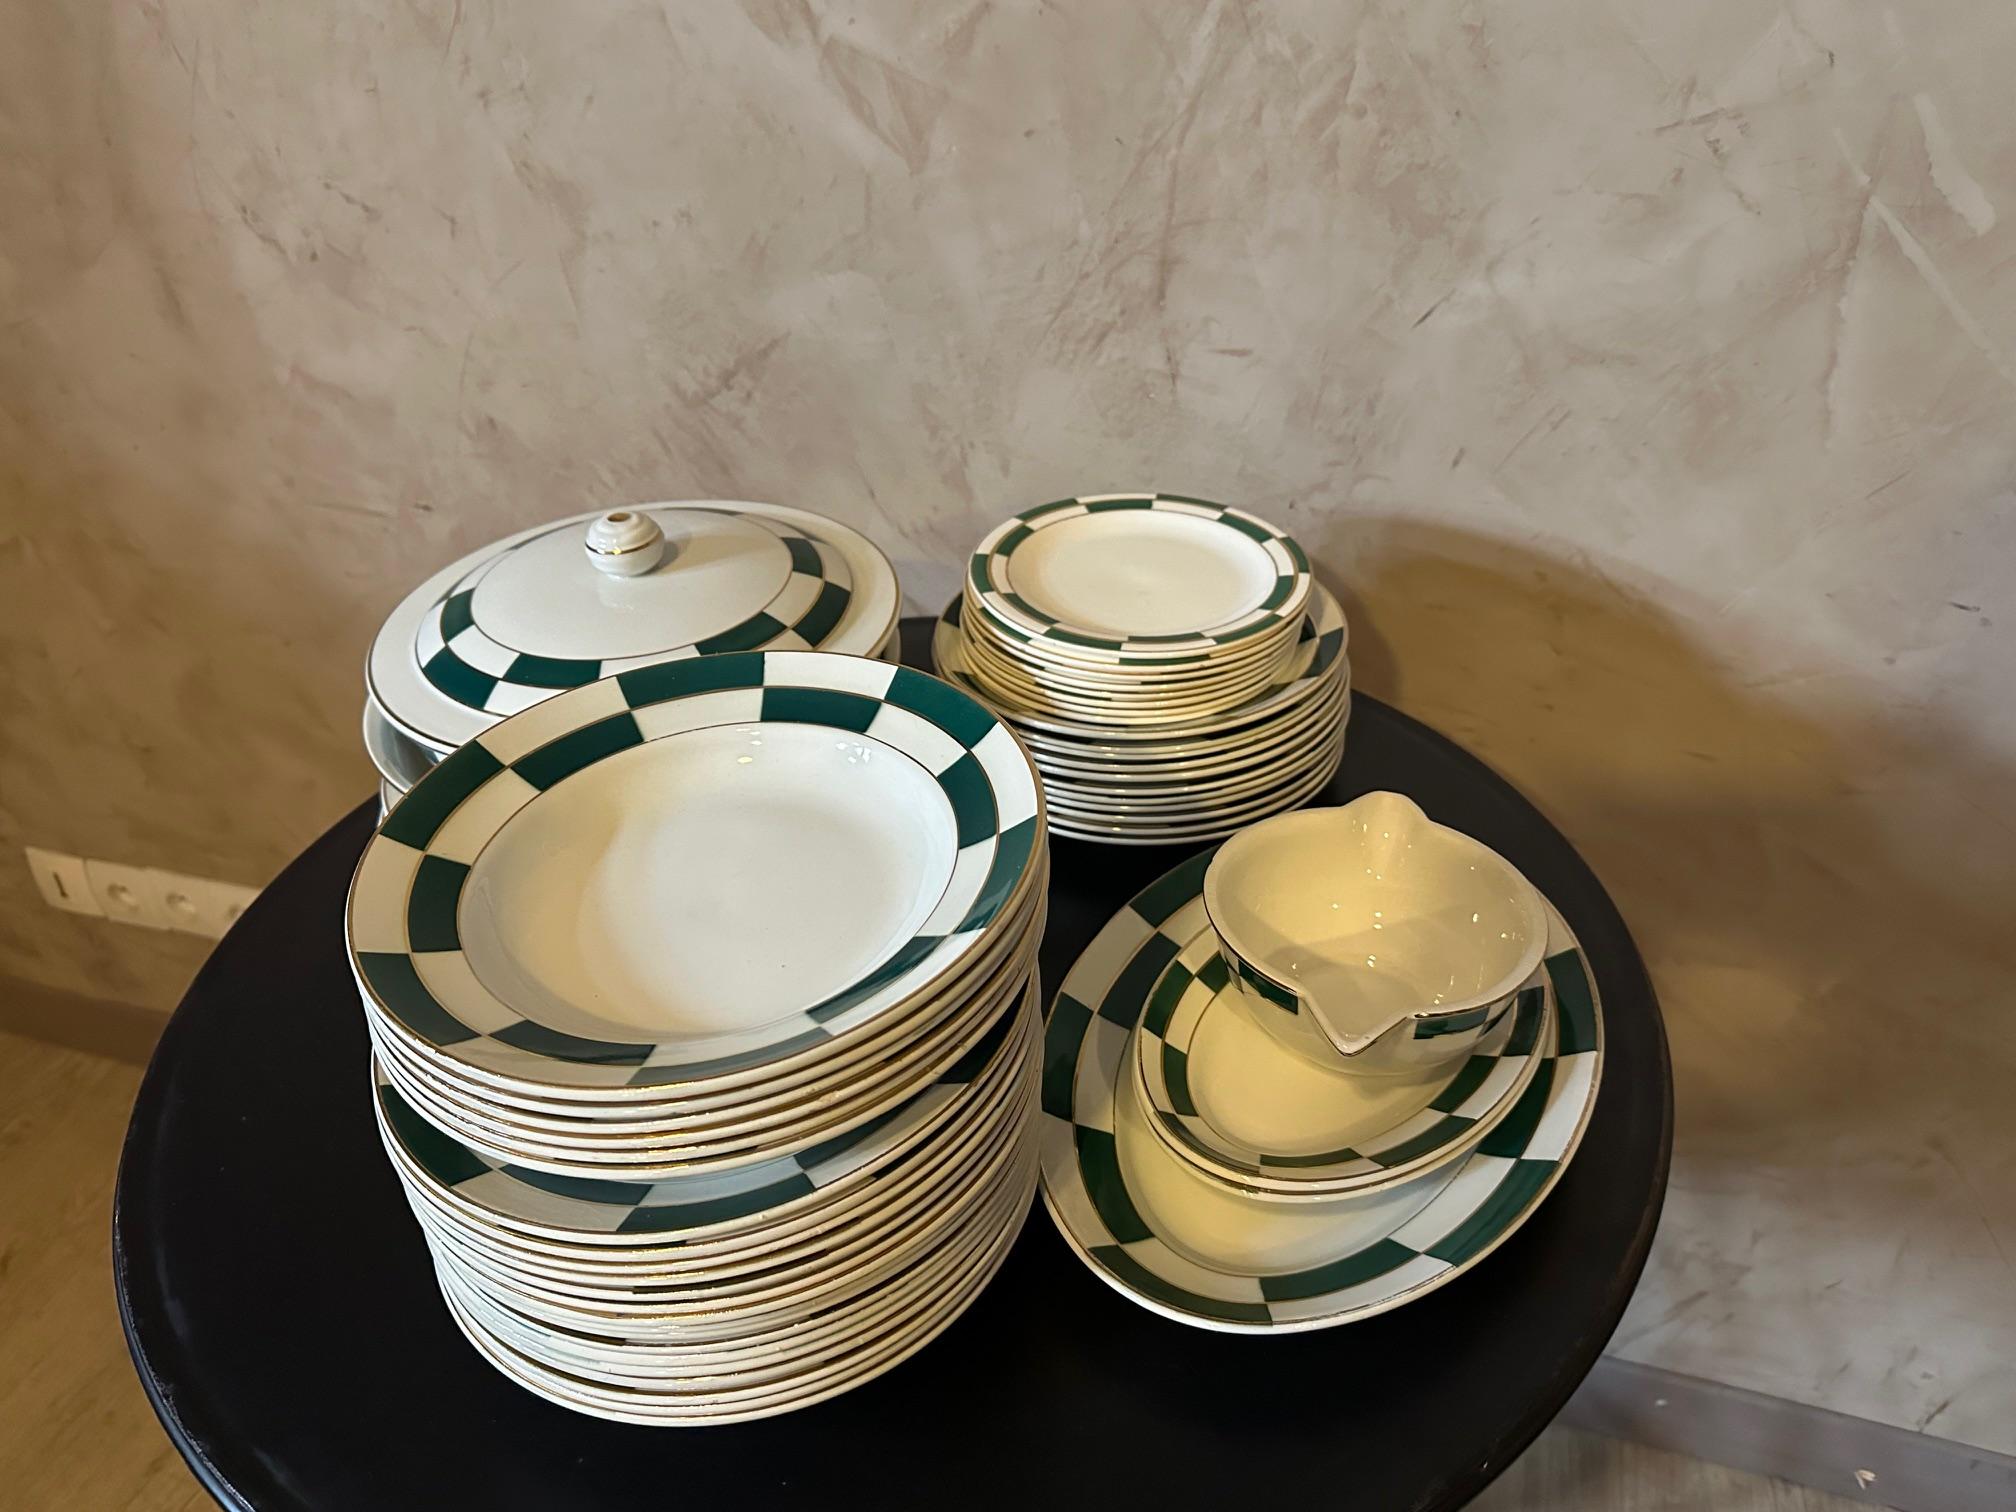 Sehr schönes Art-Deco-Service aus opakem Porzellan der Fayencerie Luneville mit grünem grafischem Dekor und goldenem Netz. 
Dieses Service besteht aus: 21 flachen Tellern (5 leicht angeschlagen) 12 Suppentellern. 8 Dessertteller (1 beschädigt) 3